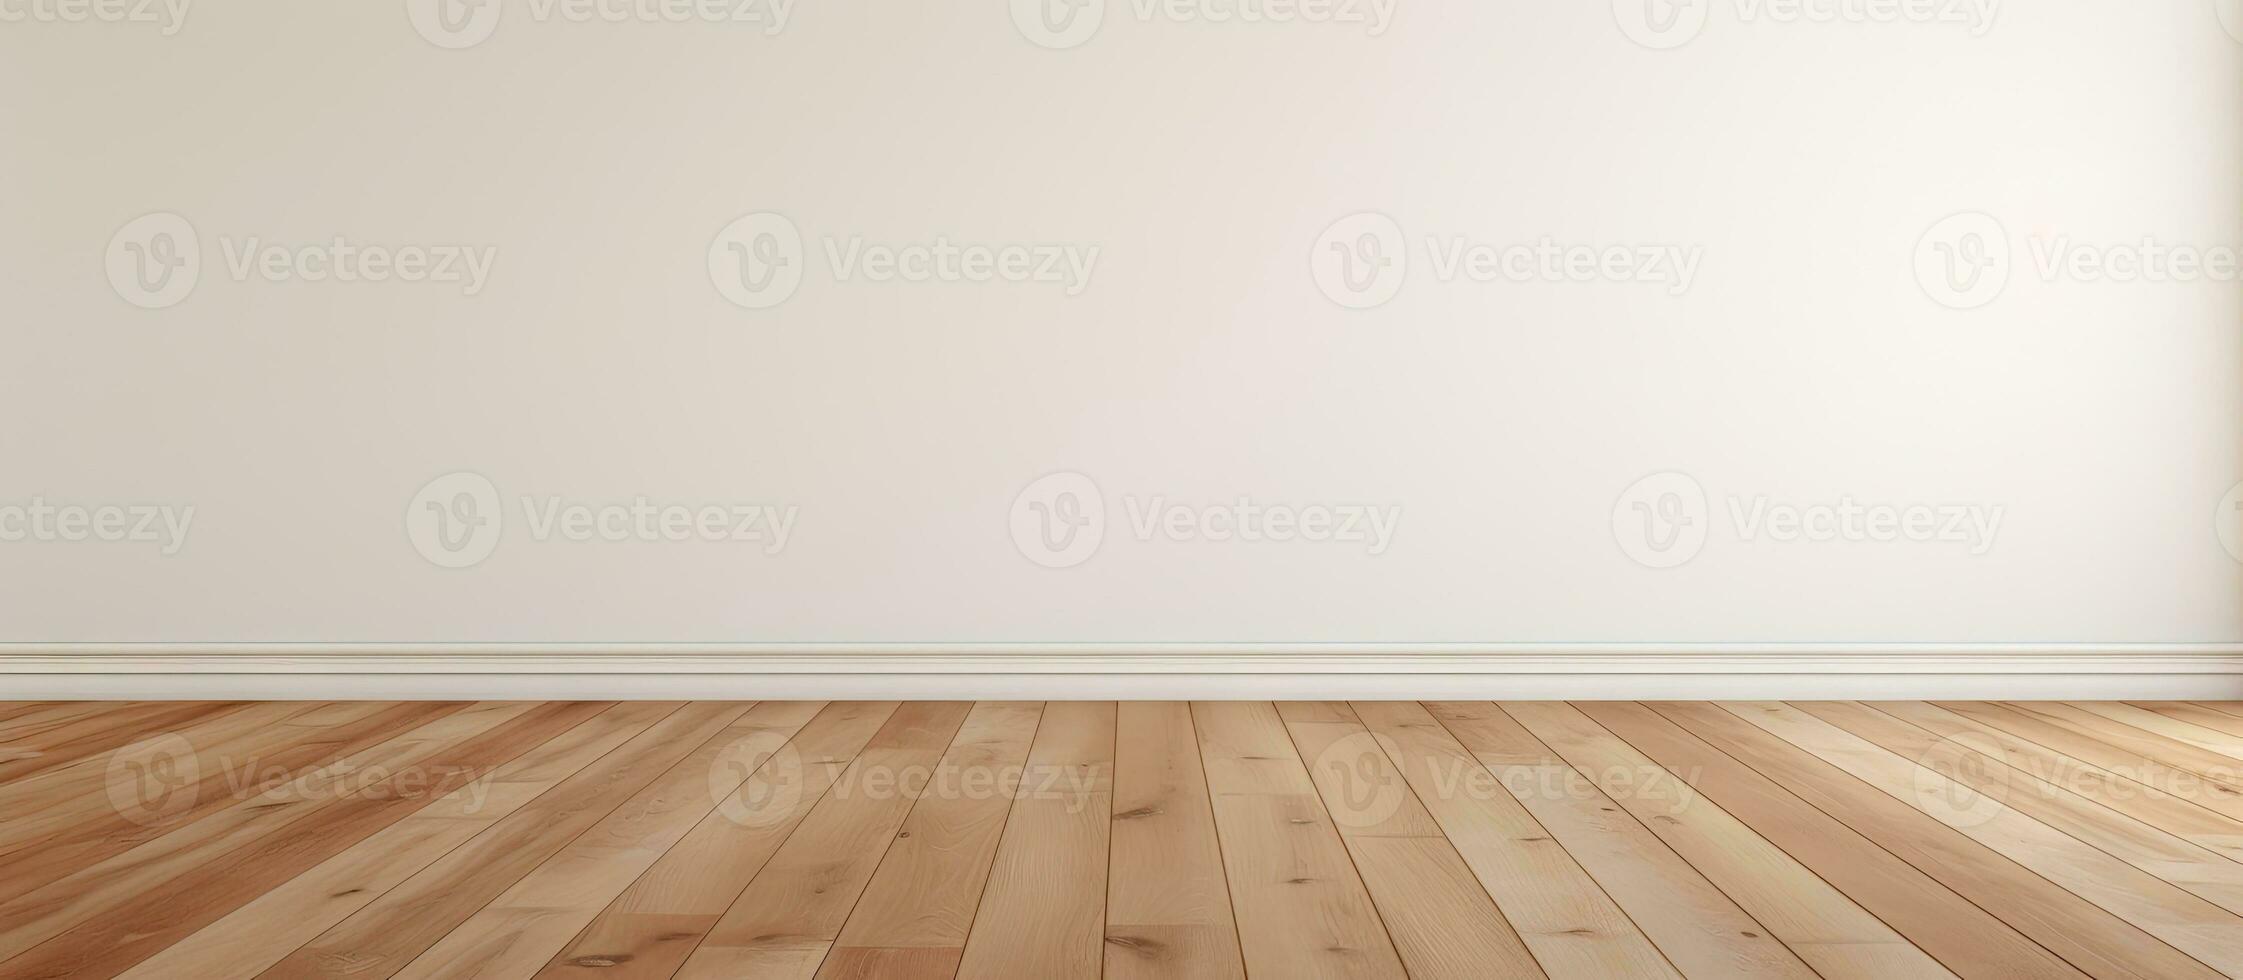 esvaziar quarto fundo apresentando uma branco parede e Castanho de madeira chão foto